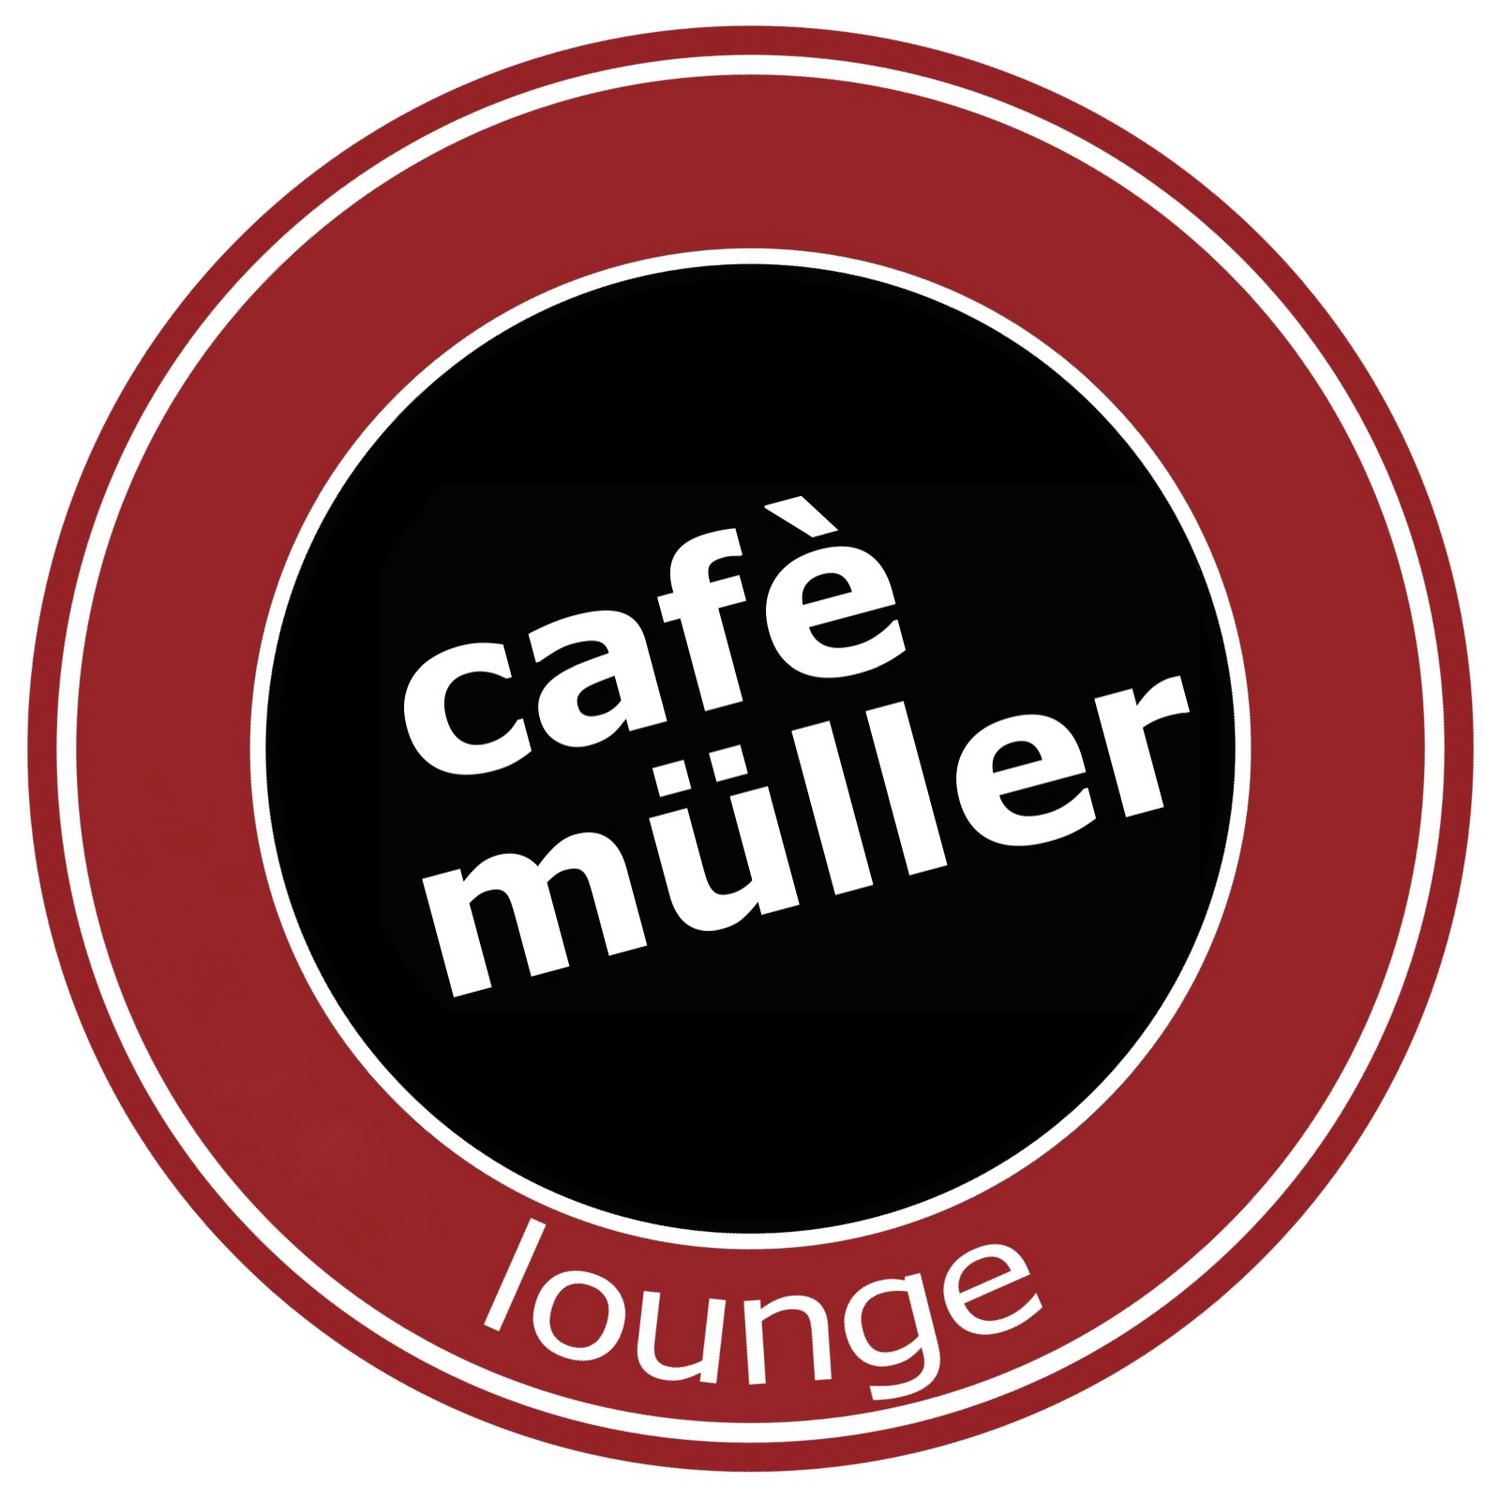 Cafe Mü ller Lounge